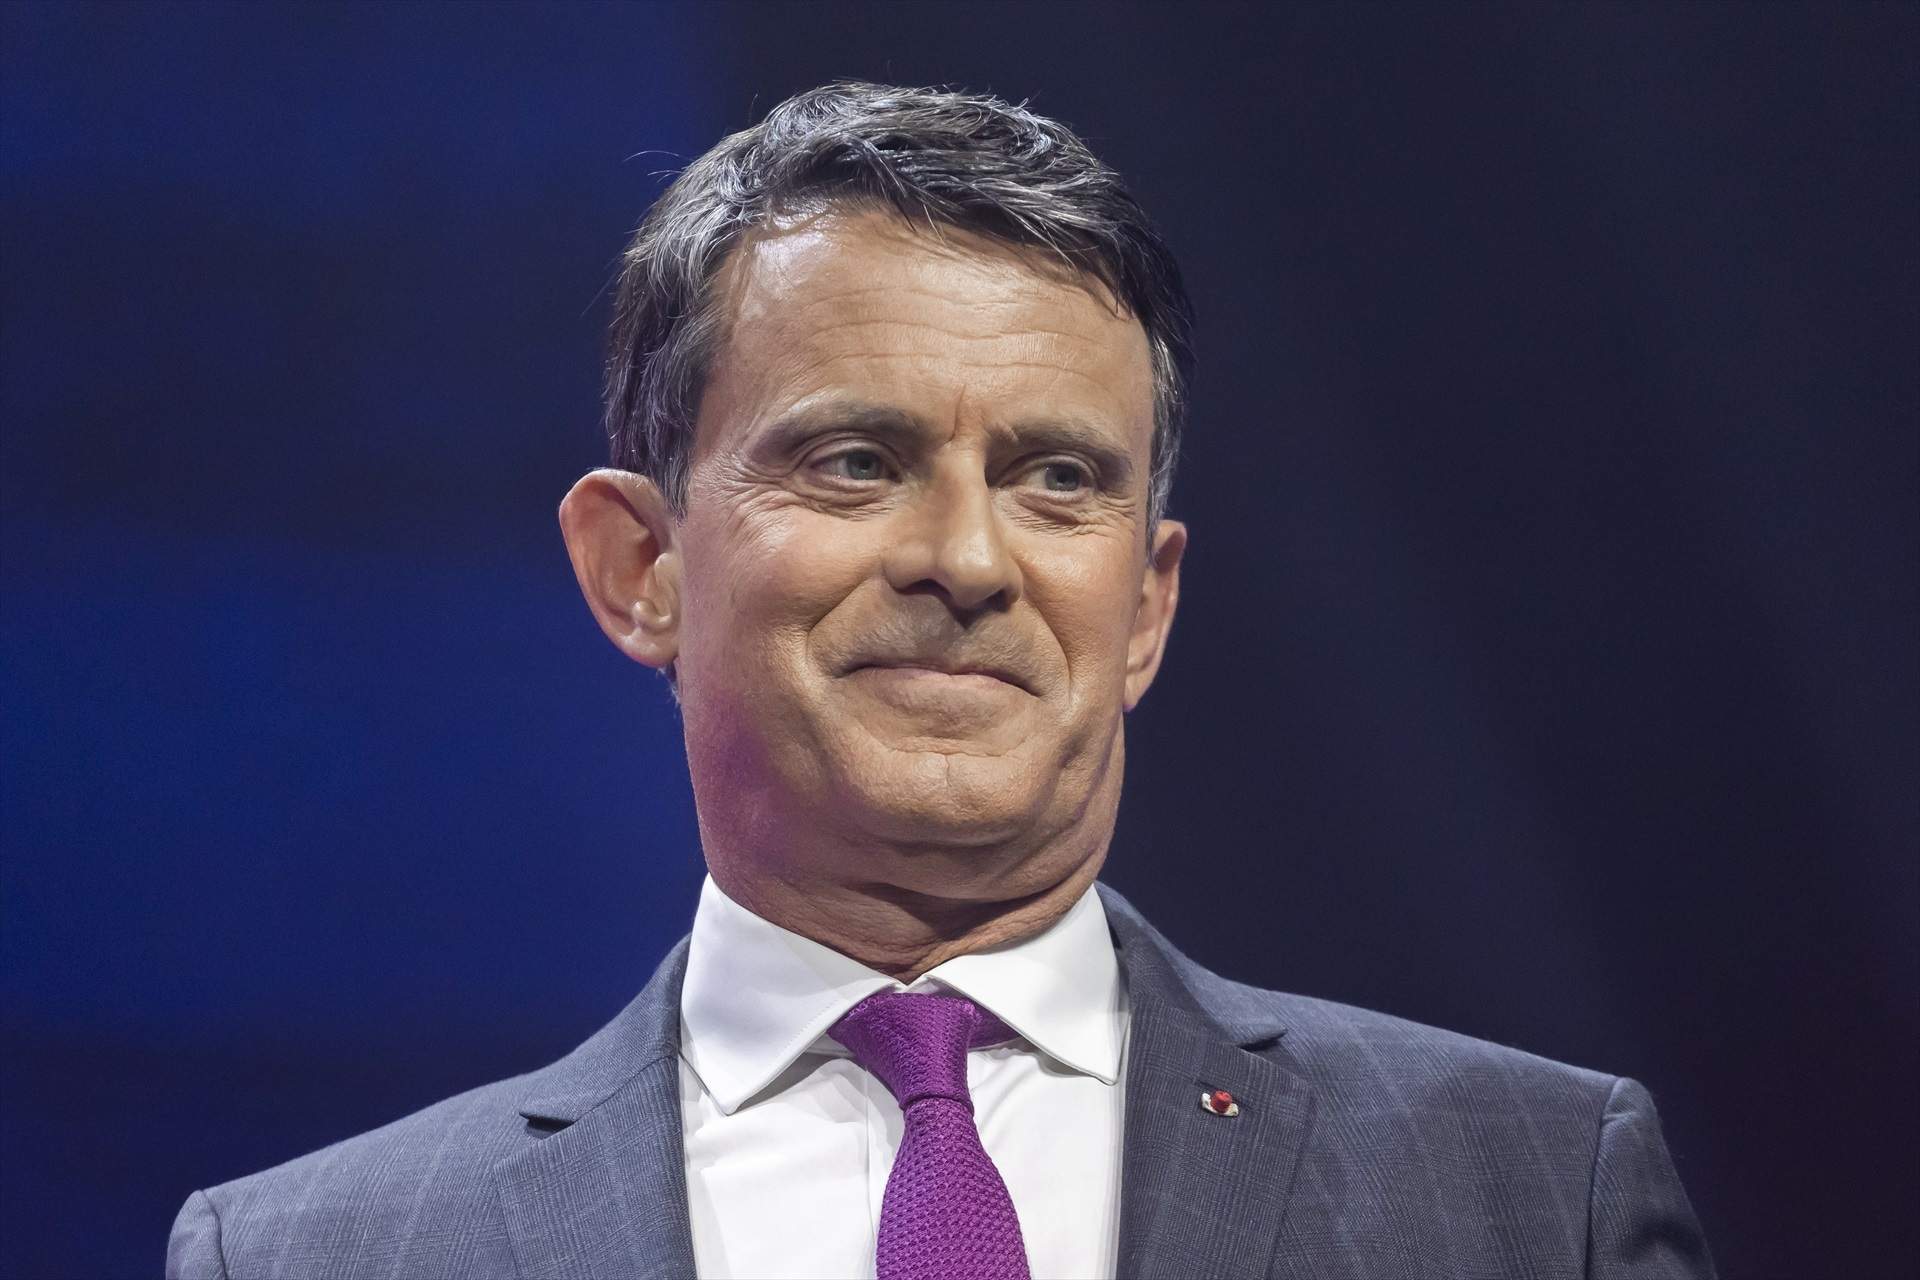 La alerta de Manuel Valls sobre la llegada al poder de la extrema derecha en Francia